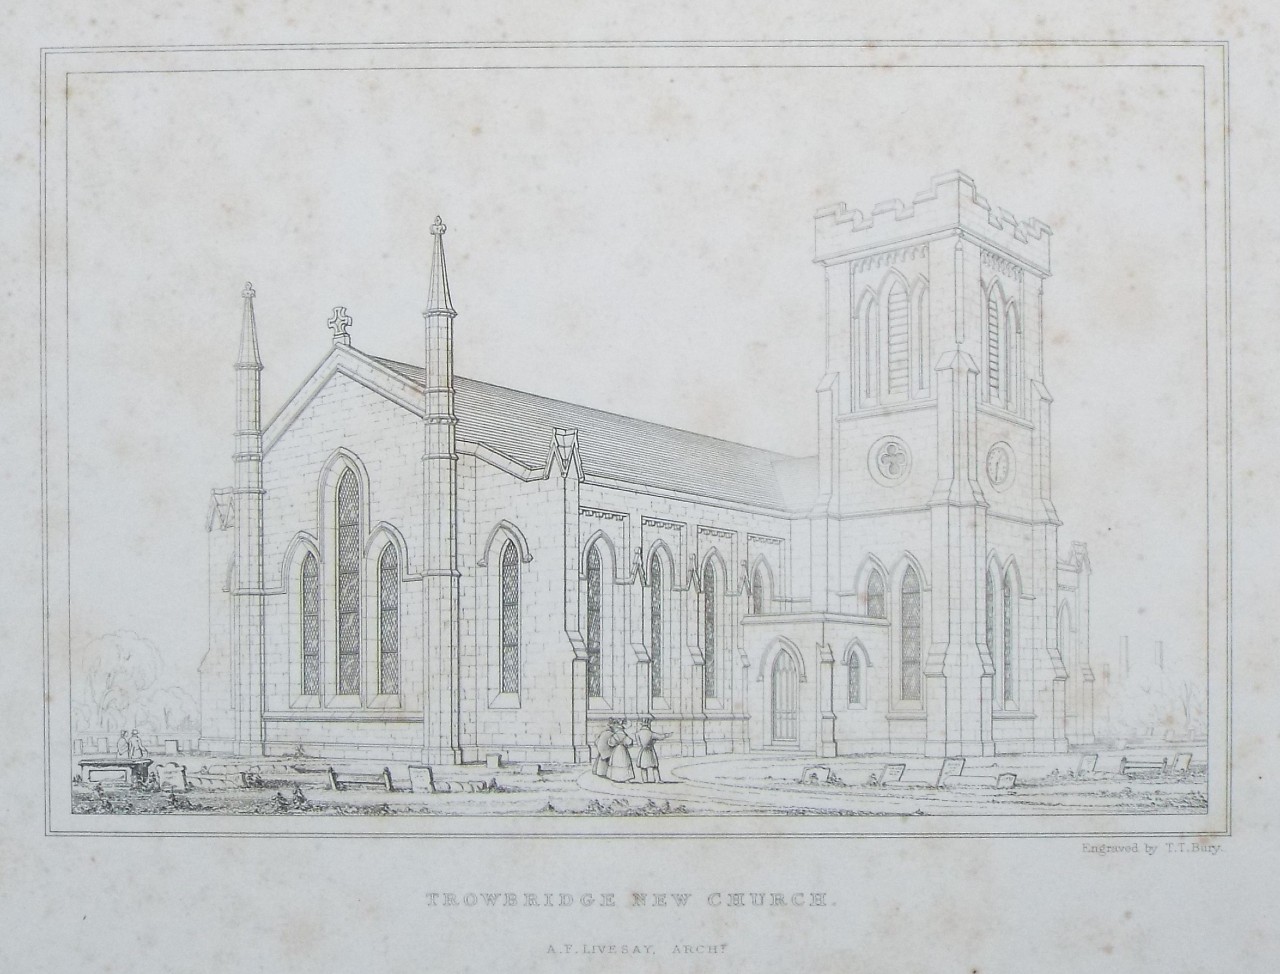 Etching - Trowbridge New Church. A. F. Livesay Archt. - Bury